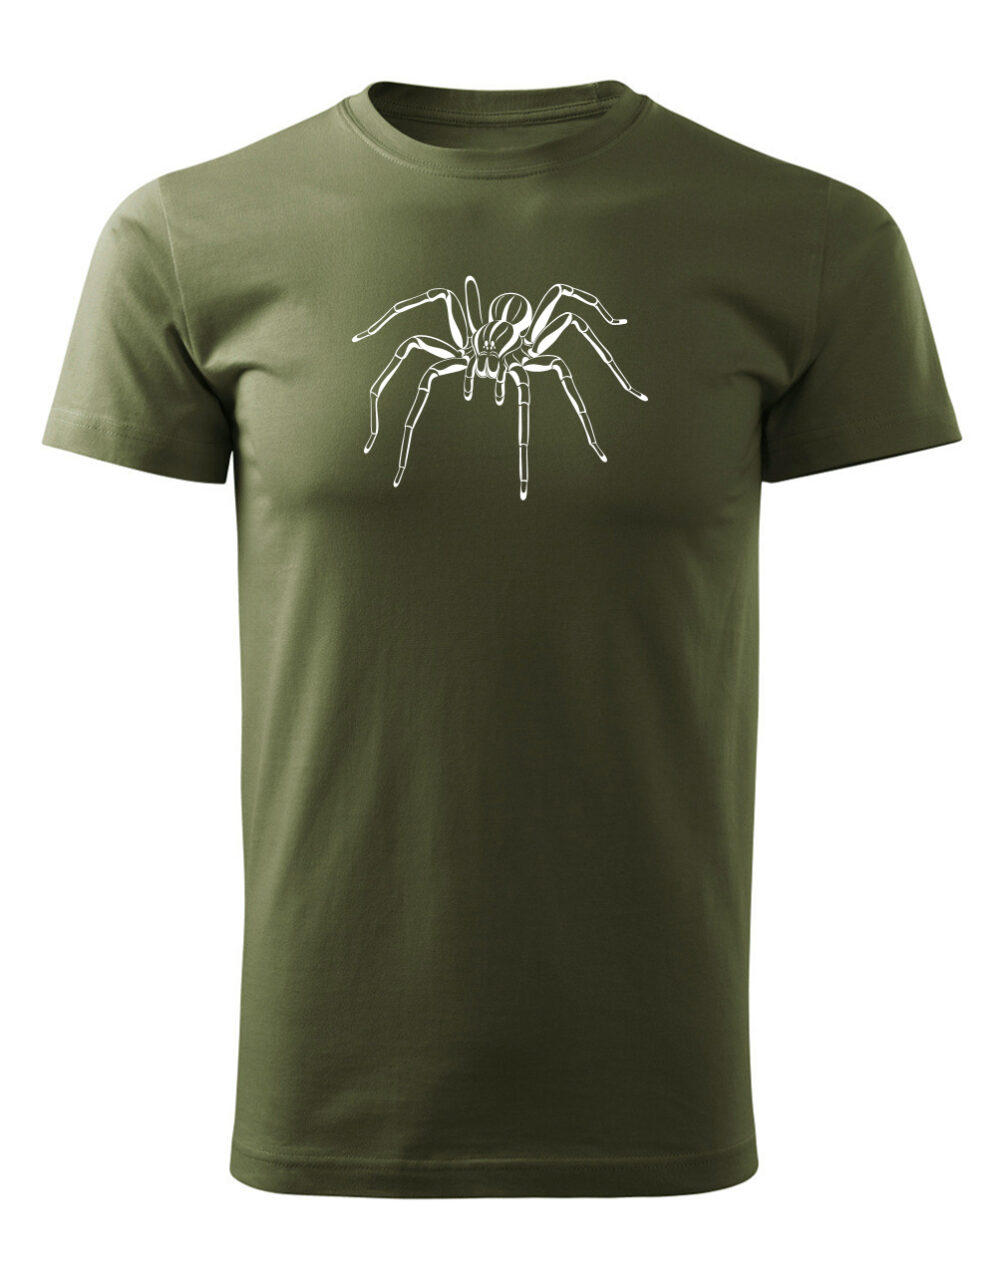 Pánské tričko s potiskem Pavouk vojenská zelená